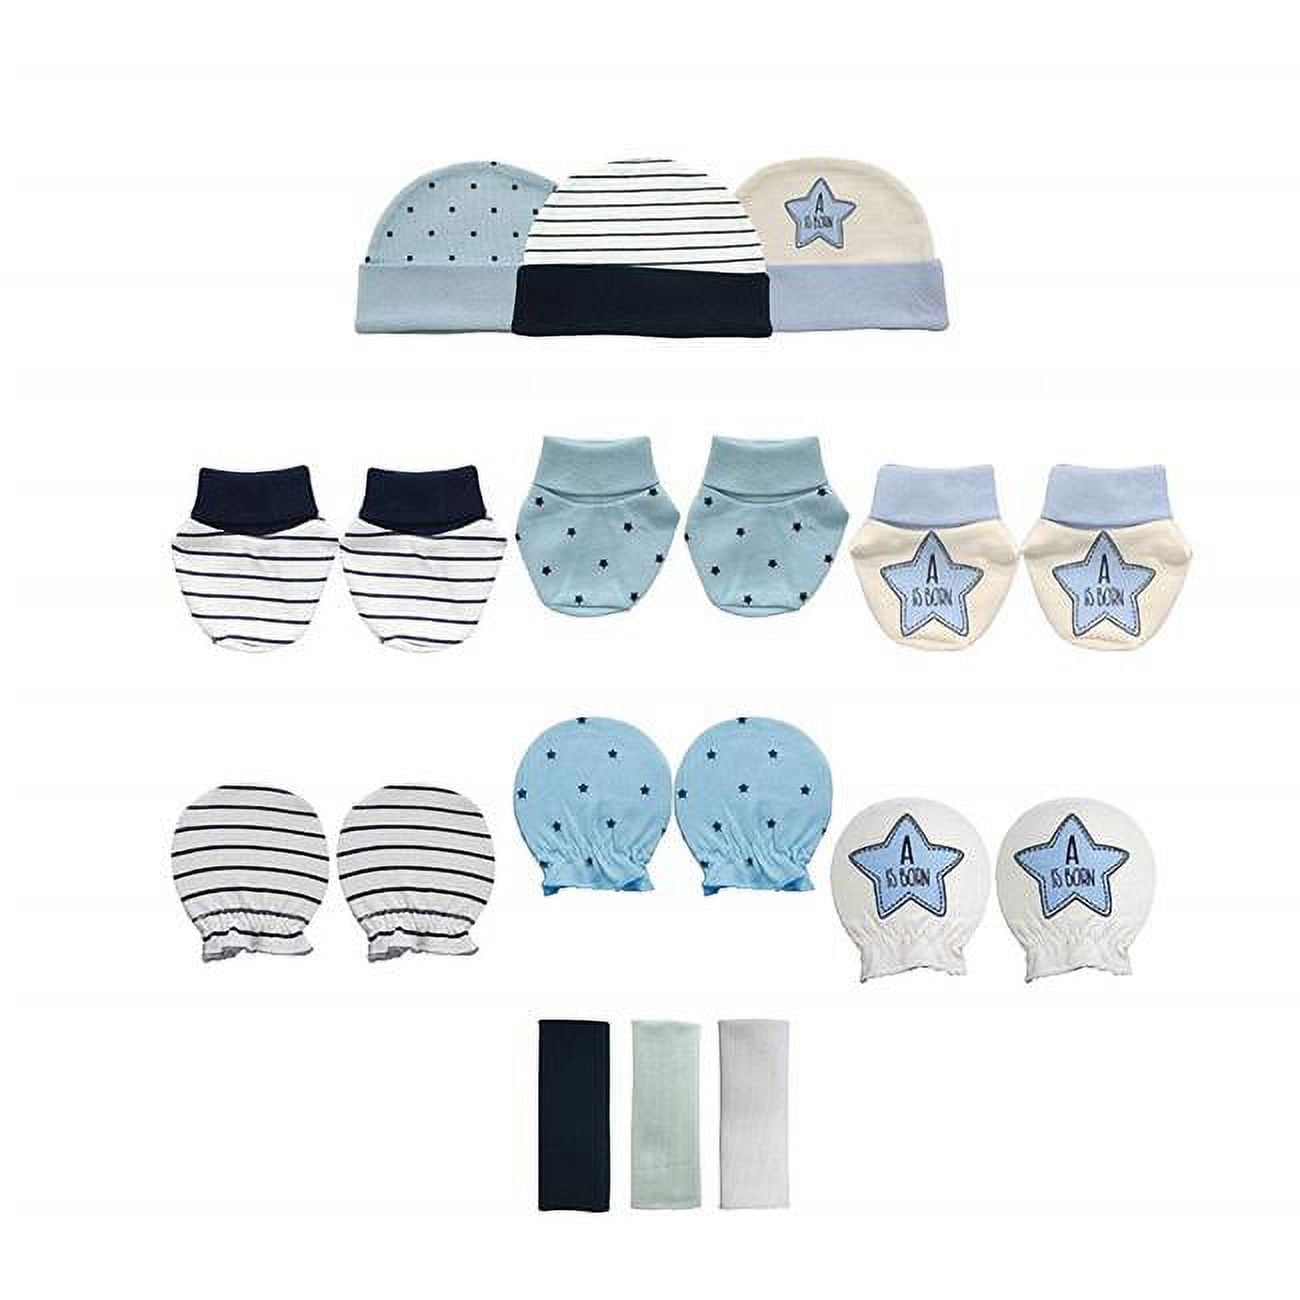 Bg 1201 Baby Shower Gift Set, Blue - 12 Piece